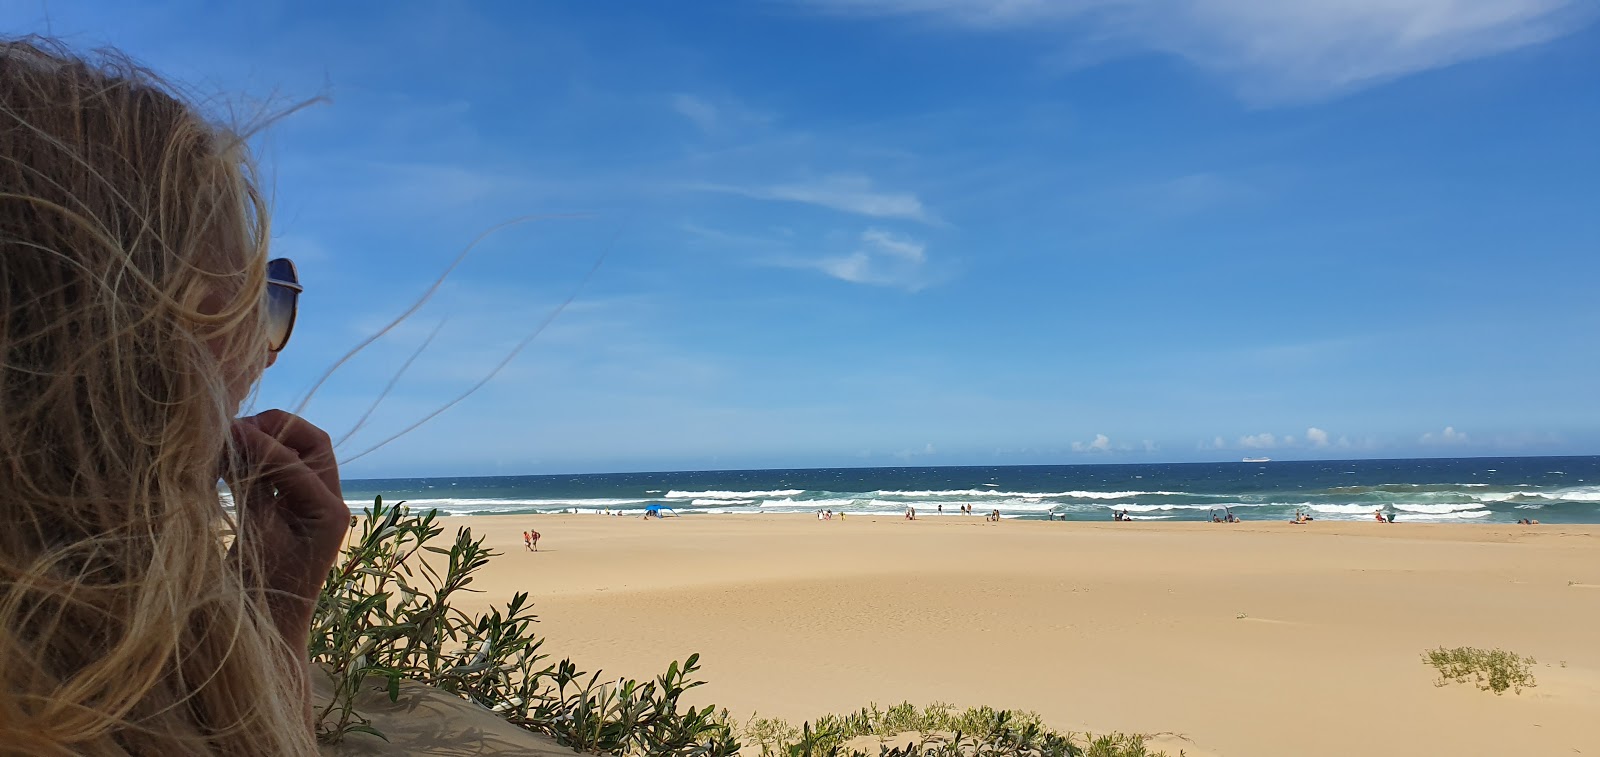 Zdjęcie Jabula beach położony w naturalnym obszarze